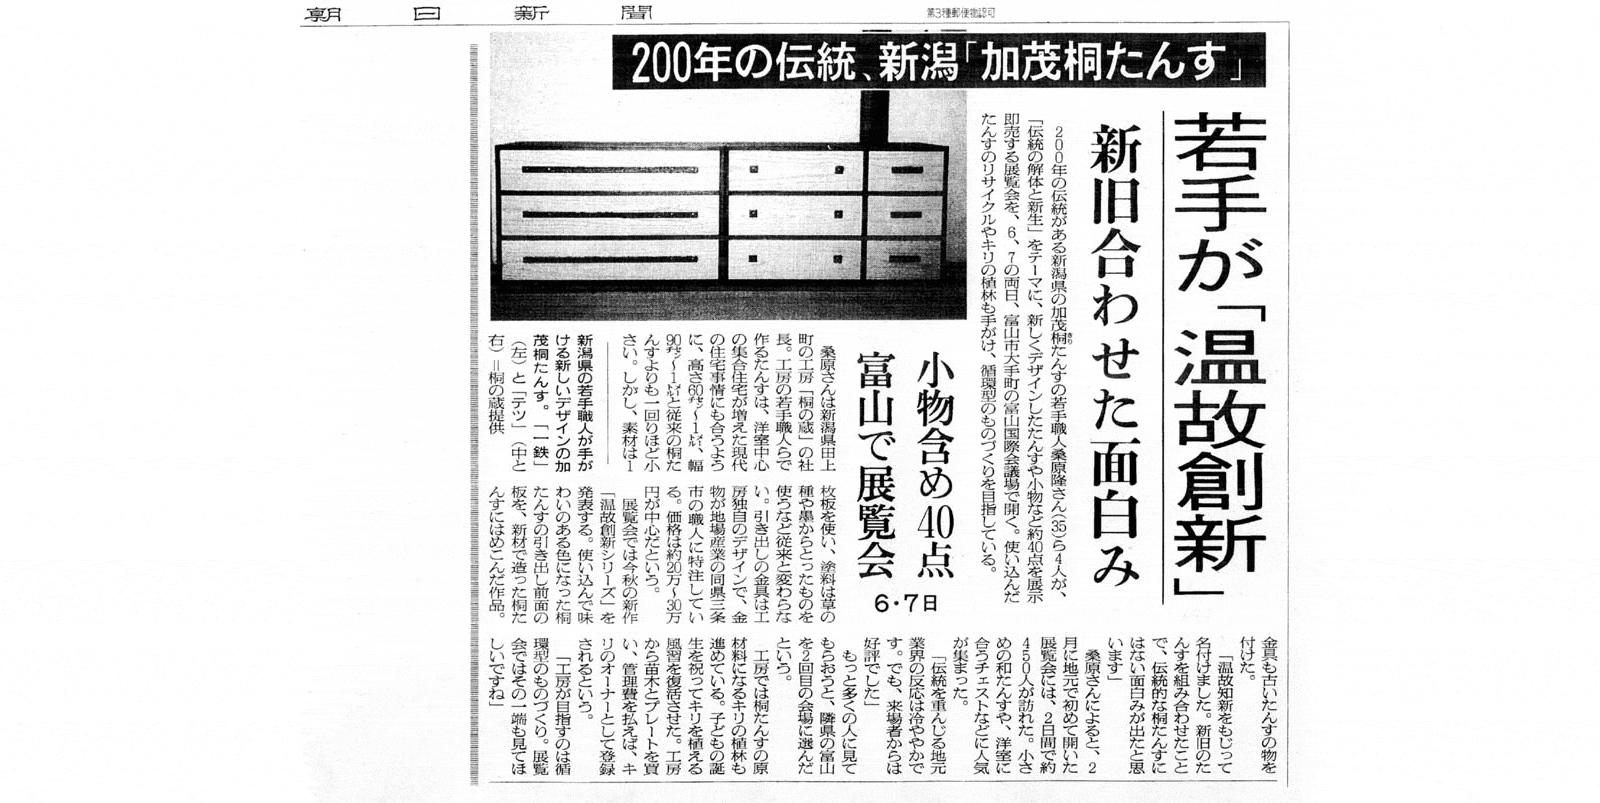 2003年6月30日 朝日新聞 富山版取材